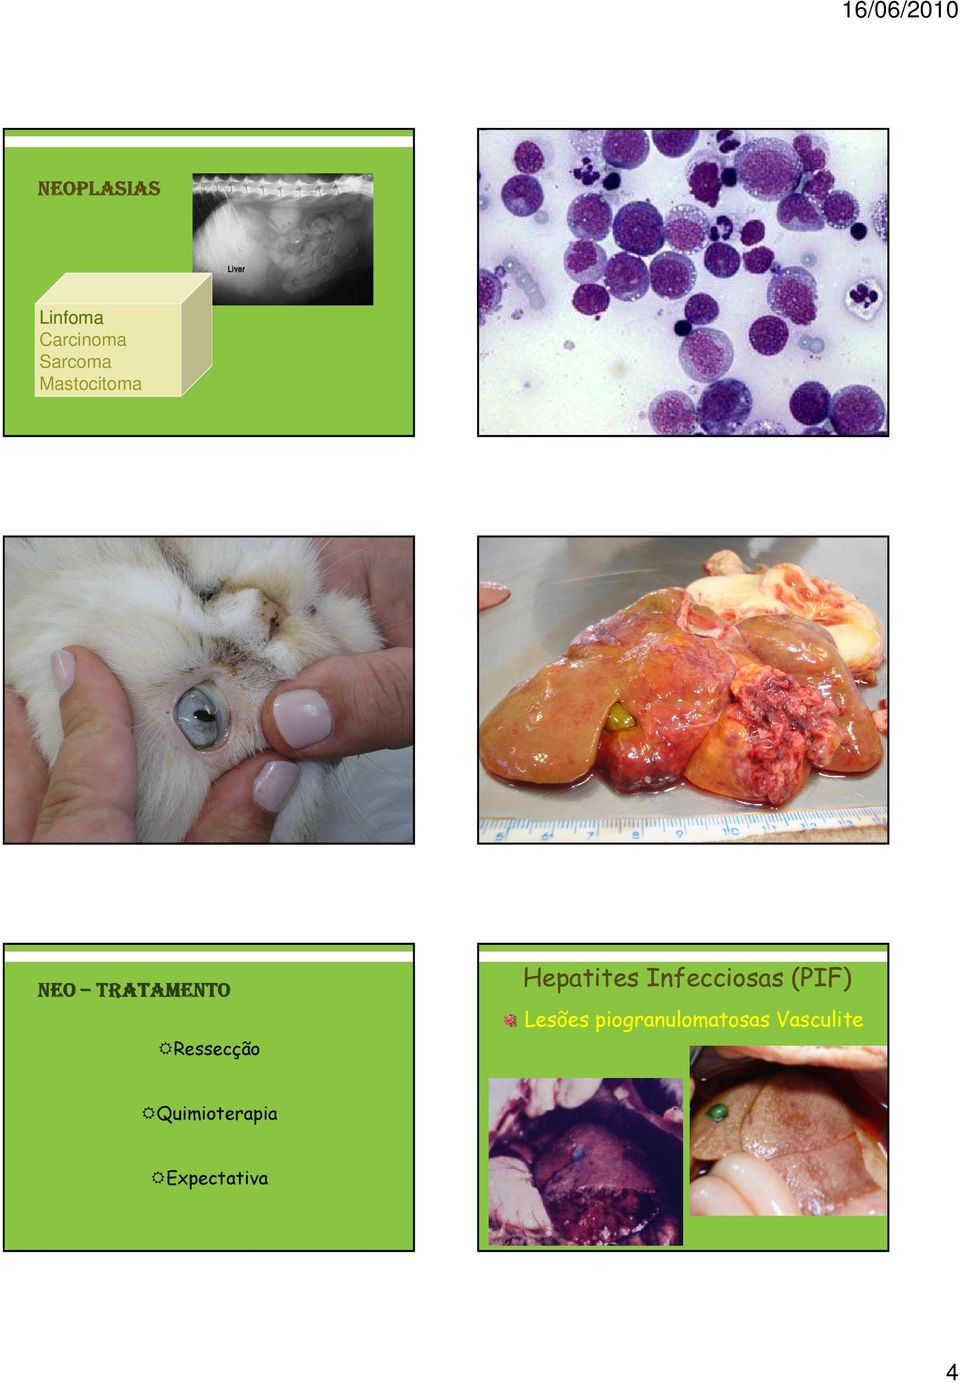 Hepatites Infecciosas (PIF) Lesões